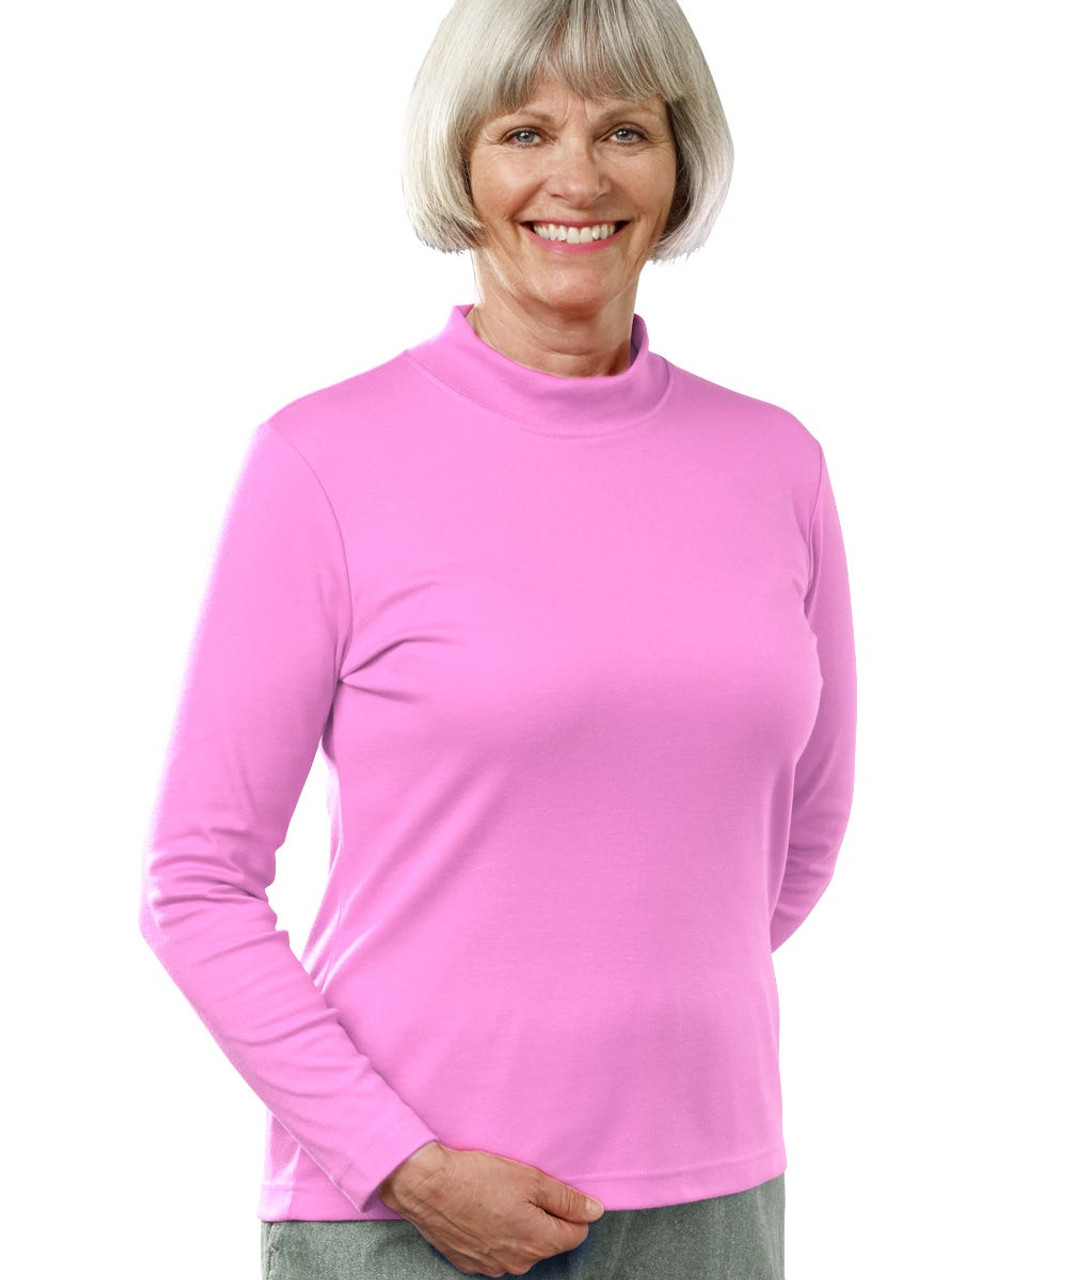 Silverts SV13060 Womens Long Sleeve Mock Turtleneck Shirt Pink Carnation, Size=2XL, SV13060-SV876-2XL